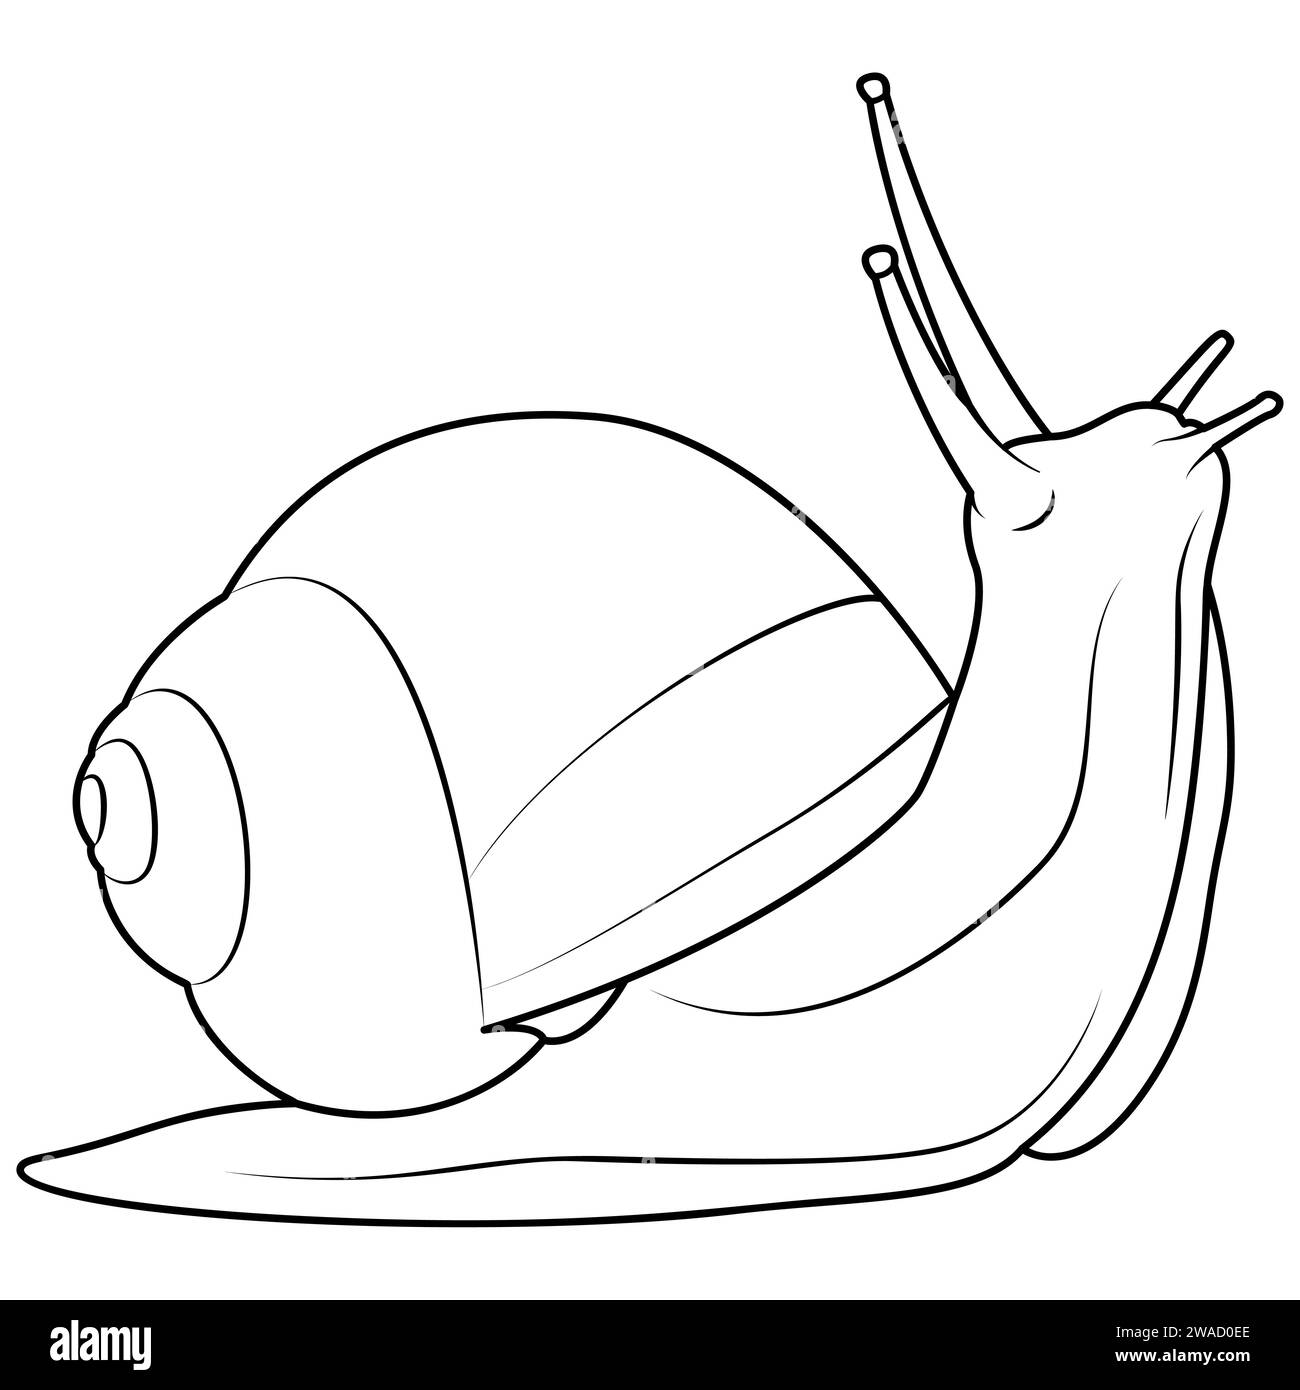 Jardin d'escargots Éléments vectoriels isolés sur fond blanc. Dessin minimaliste pour la conception d'emballage cosmétique, étiquette, logo, bannière ou page de coloriage d'impression. Illustration vectorielle Illustration de Vecteur